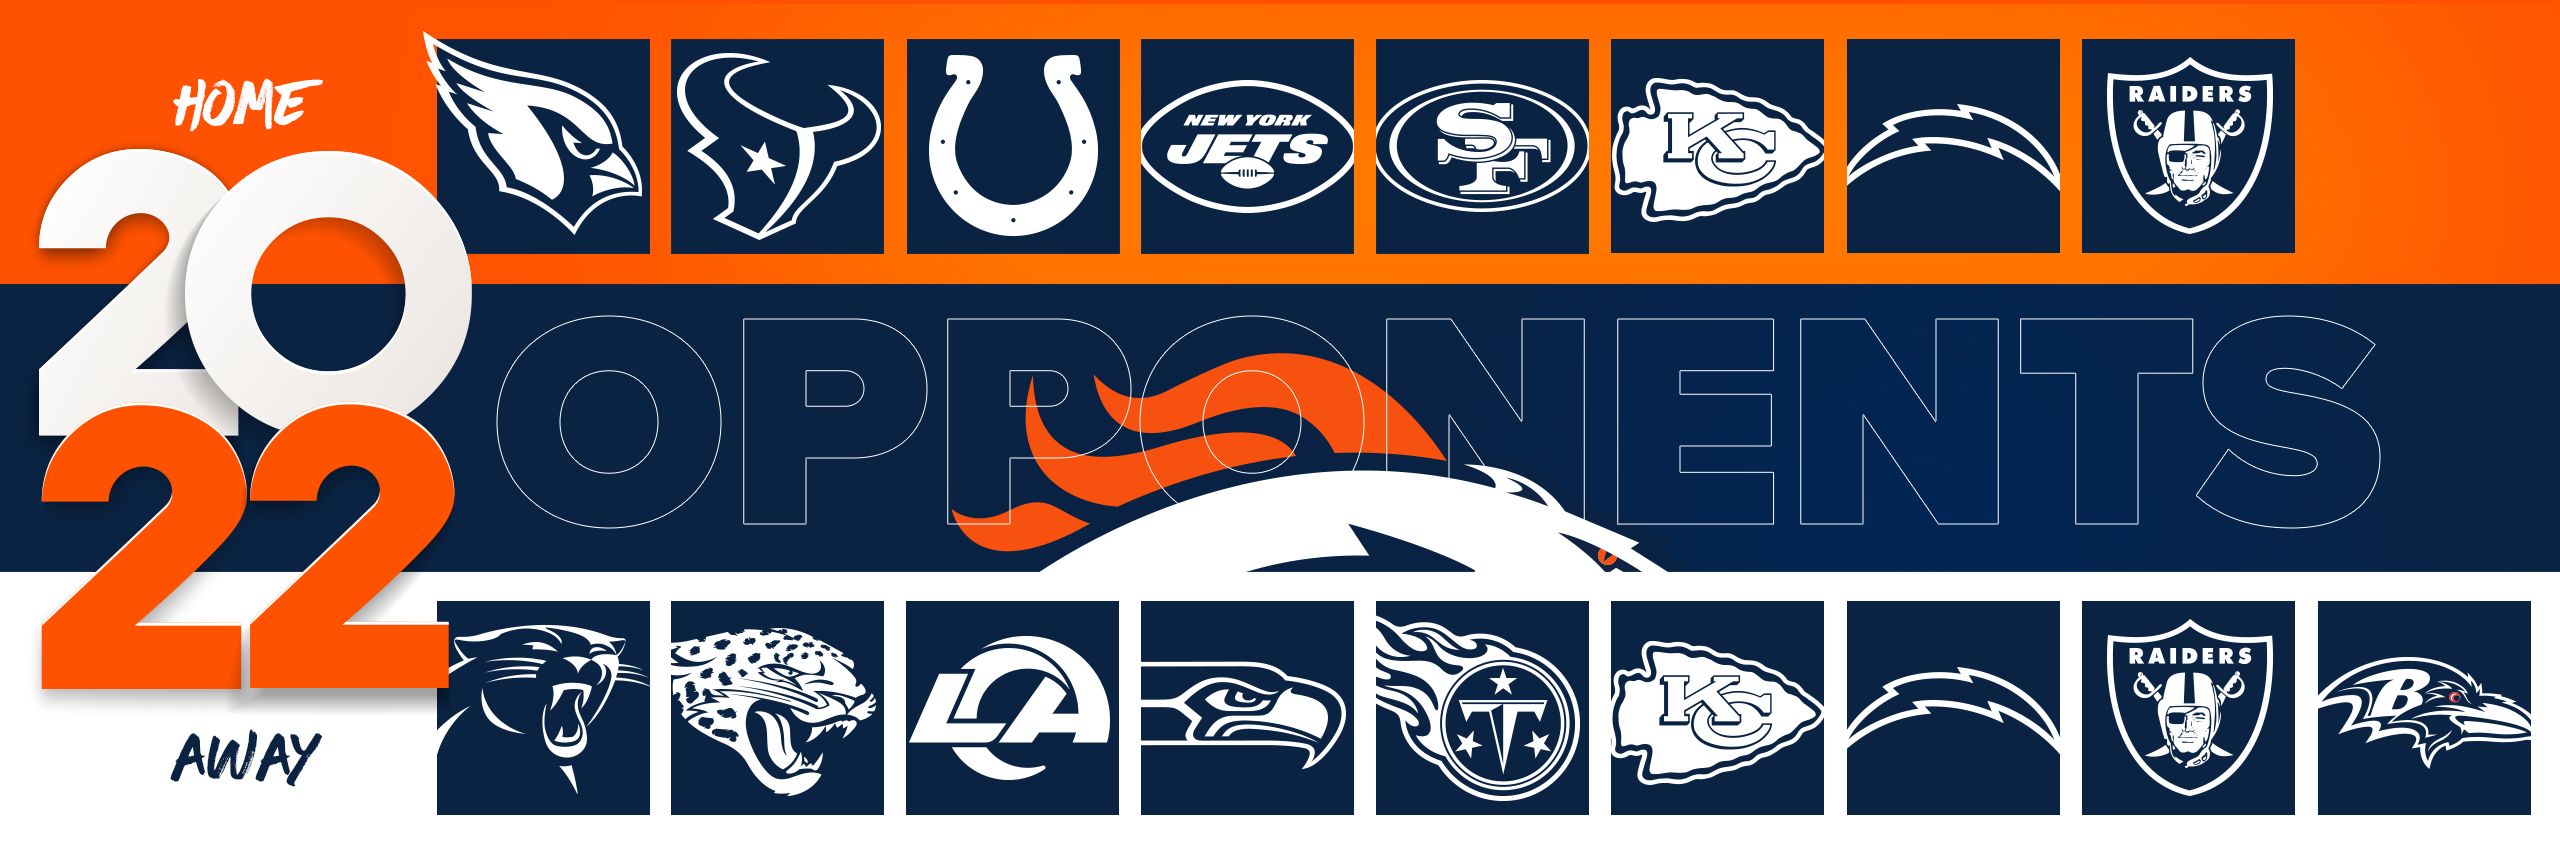 Lions Schedule 2022 Printable Denver Broncos | Schedule